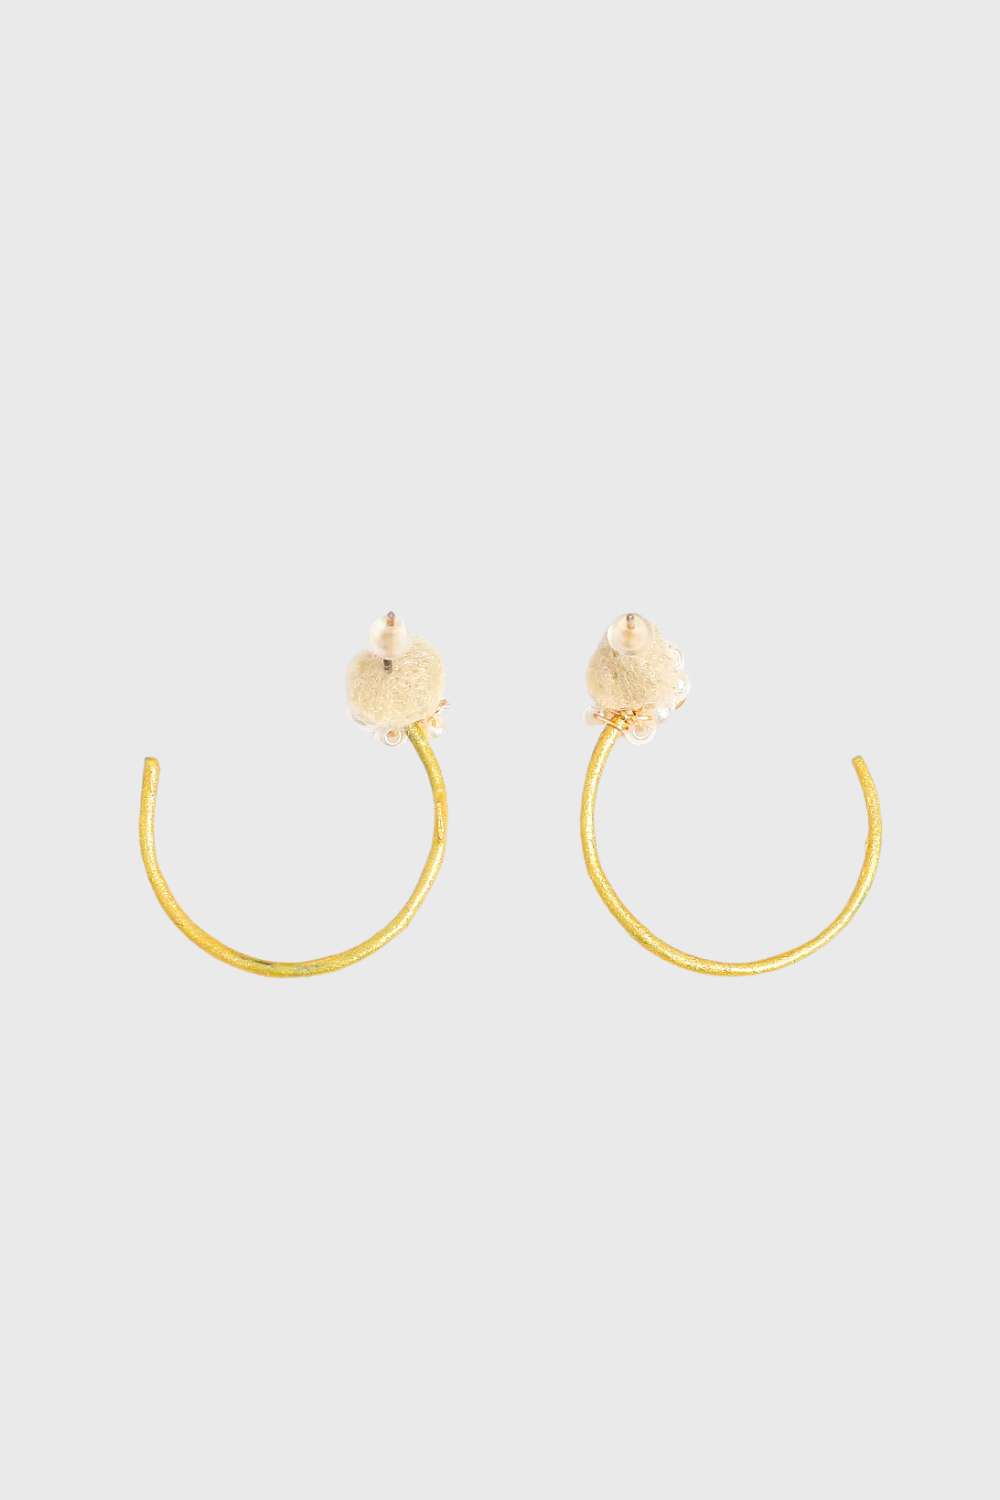 Grace Pearls Earrings in Gold